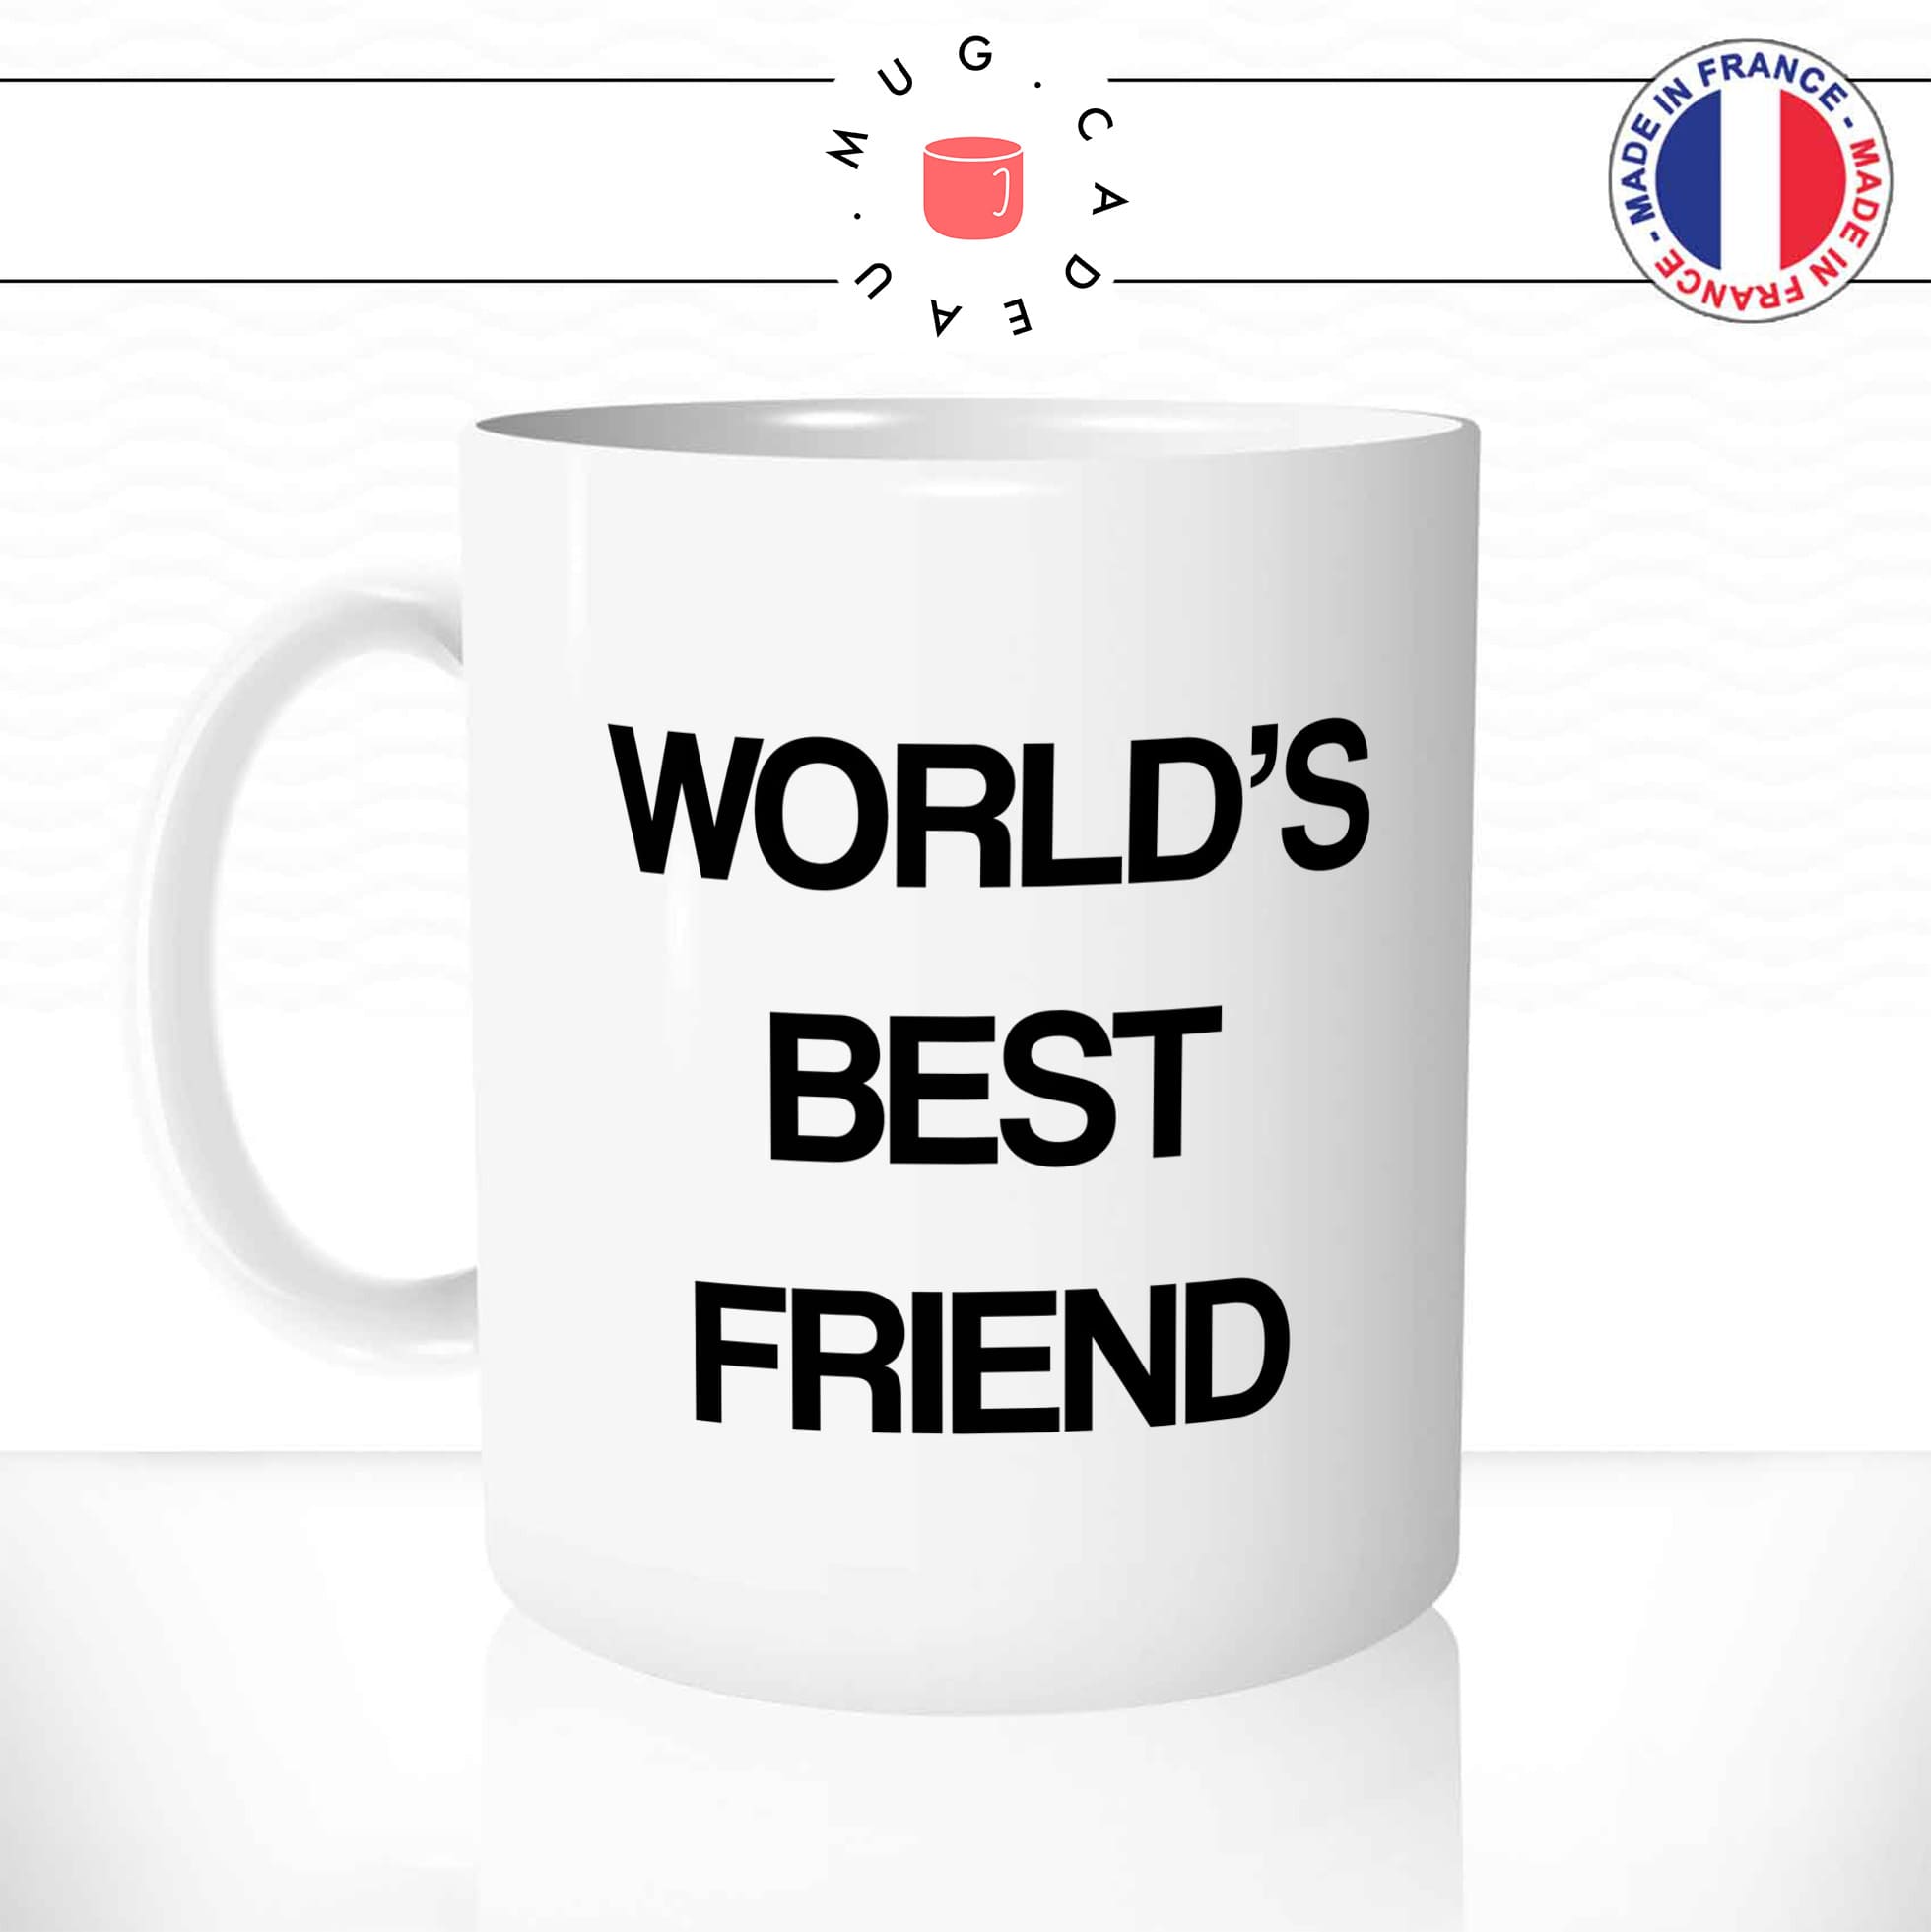 mug-tasse-world's-best-friend-meilleur-ami-pote-the-office-série-offrir-fun-humour-idée-cadeau-originale-personnalisée